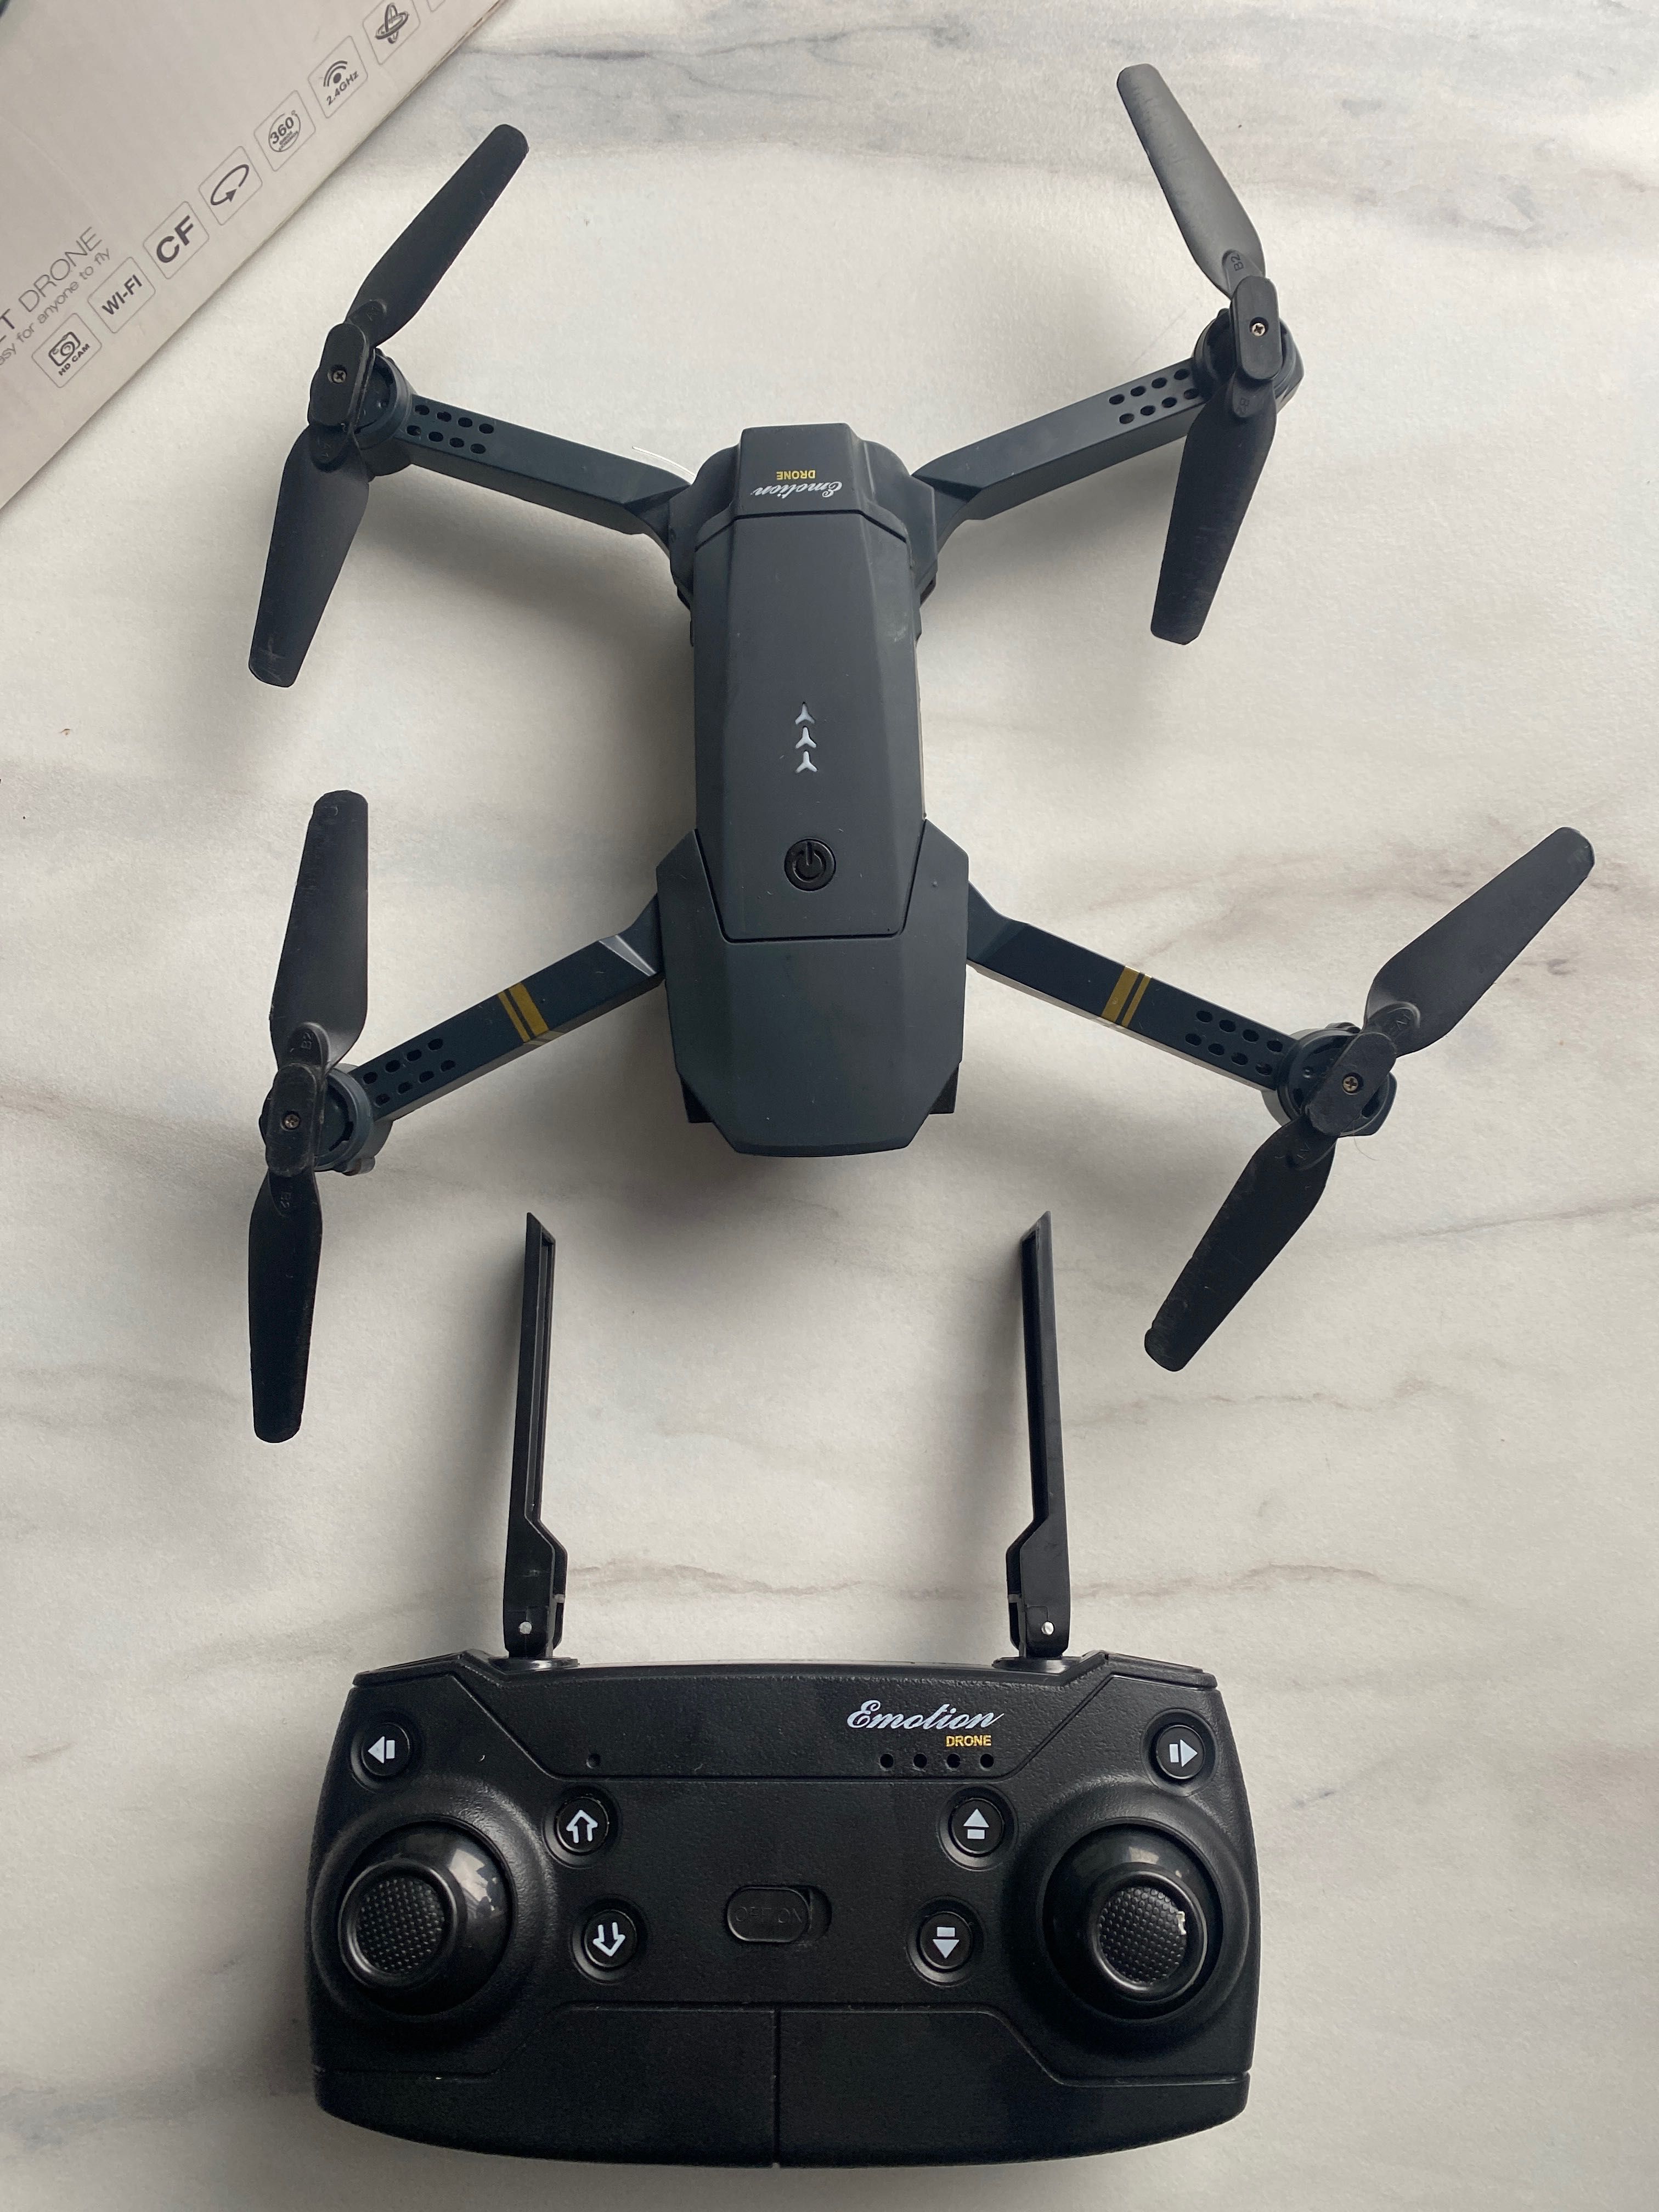 EACHINE E58 POCKET DRONE dron z kamerą 2.4Ghz